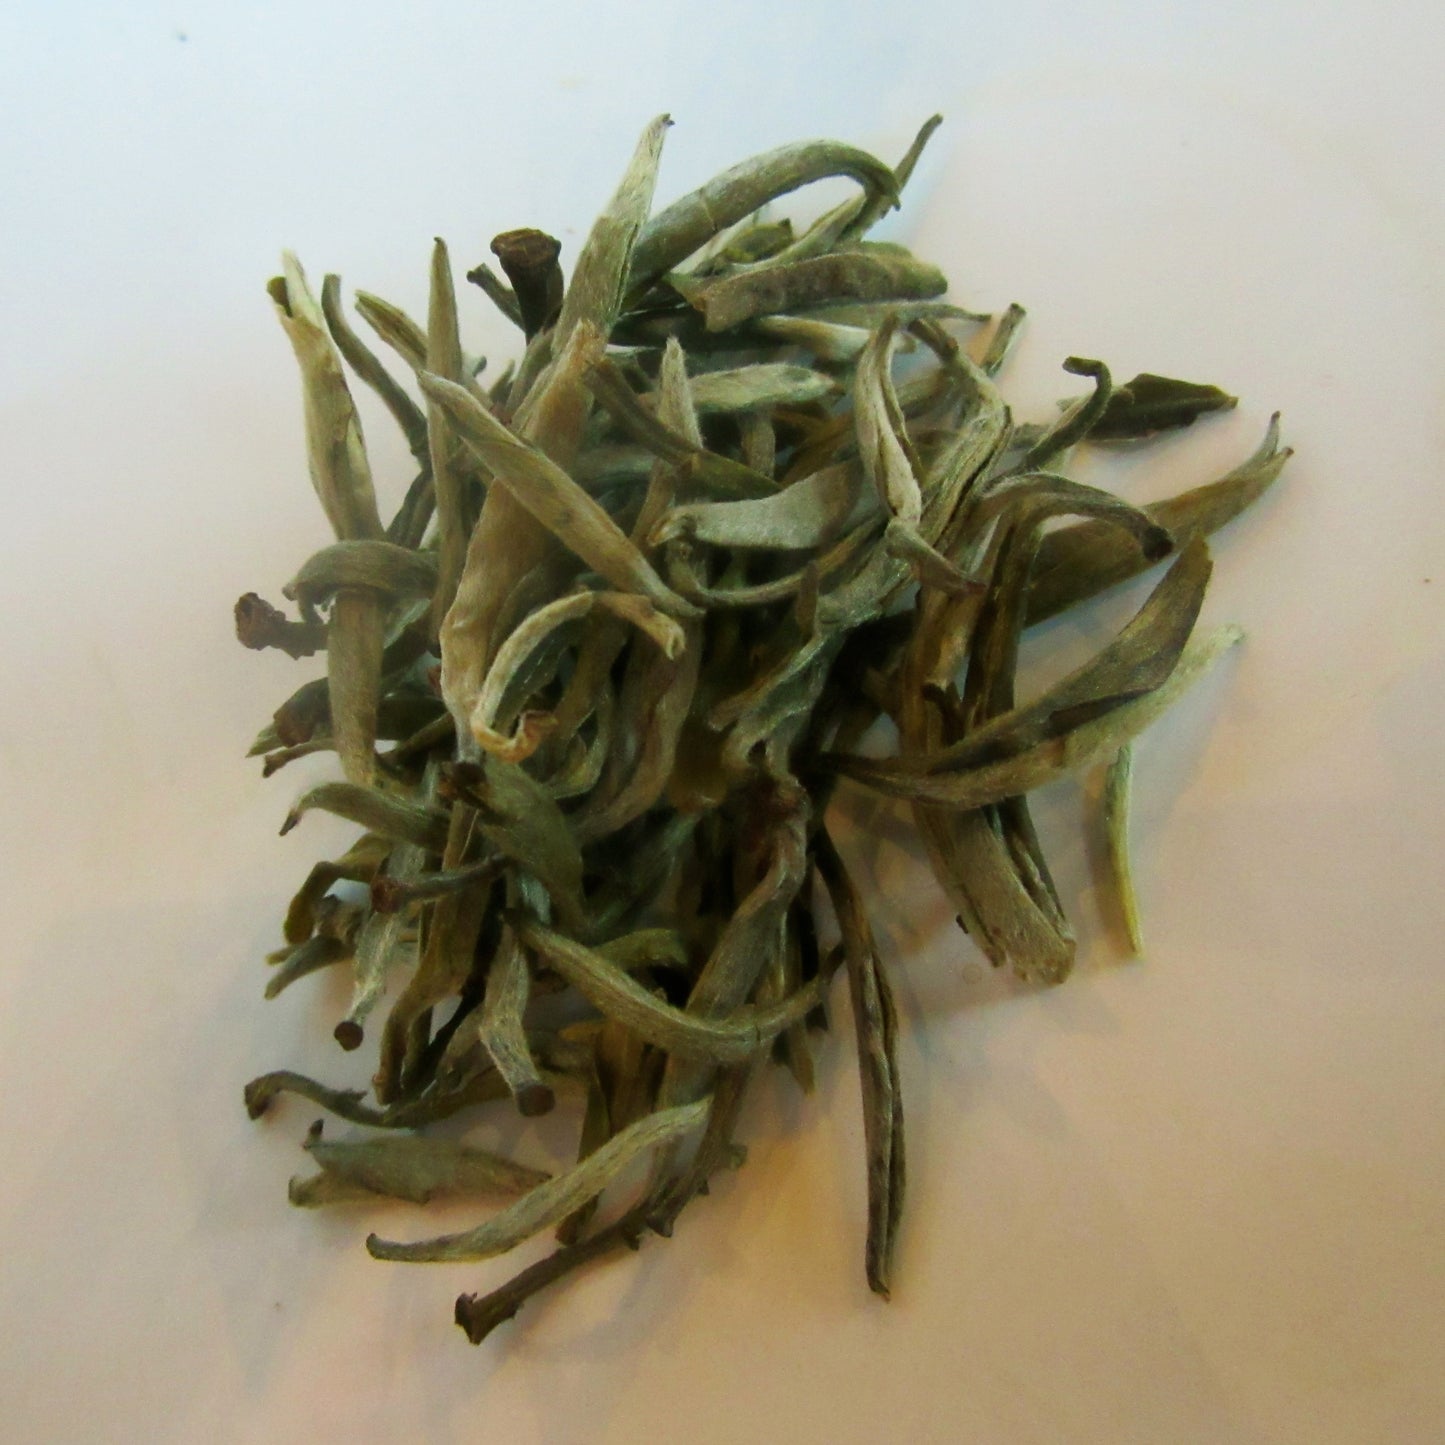 Bai Hao Yin Zhen (Silver Needle) White Tea Organic 50g